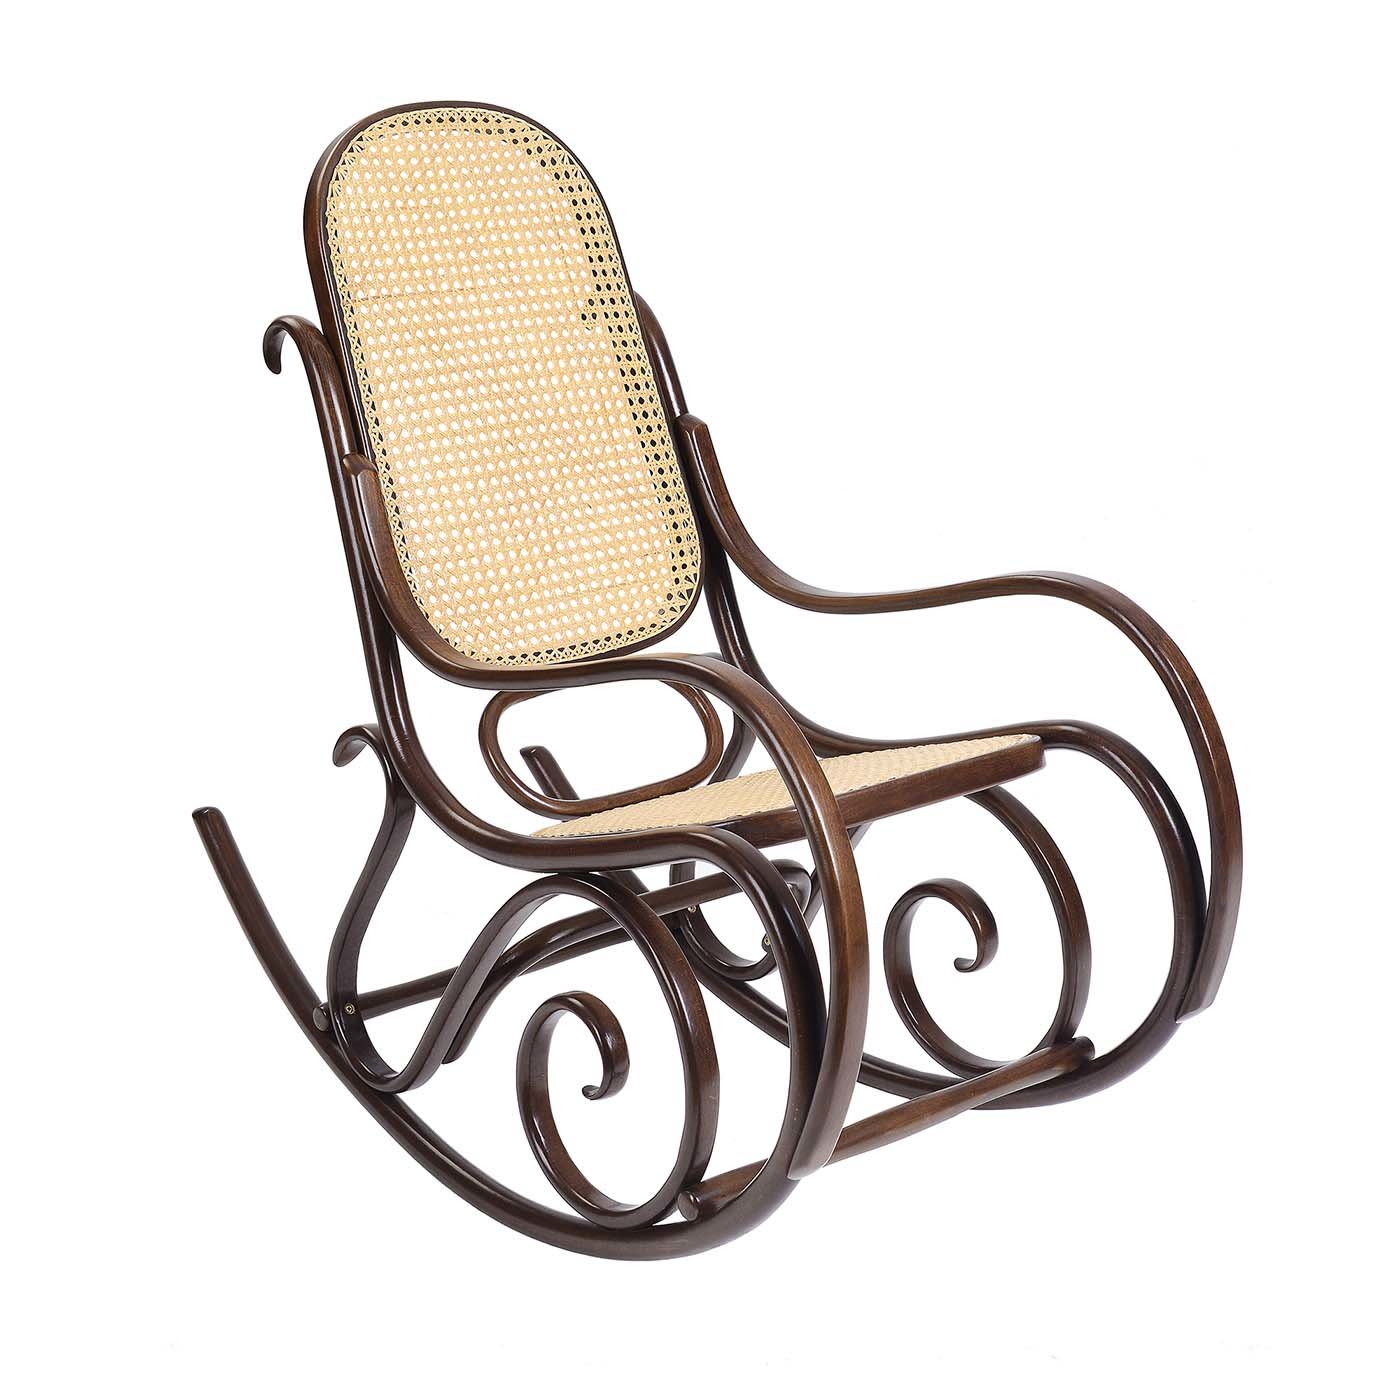 Schaukelstuhl Brown Rocking Chair by Gebrüder Thonet - Gebrüder Thonet Vienna GmbH (GTV) – Wiener GTV Design